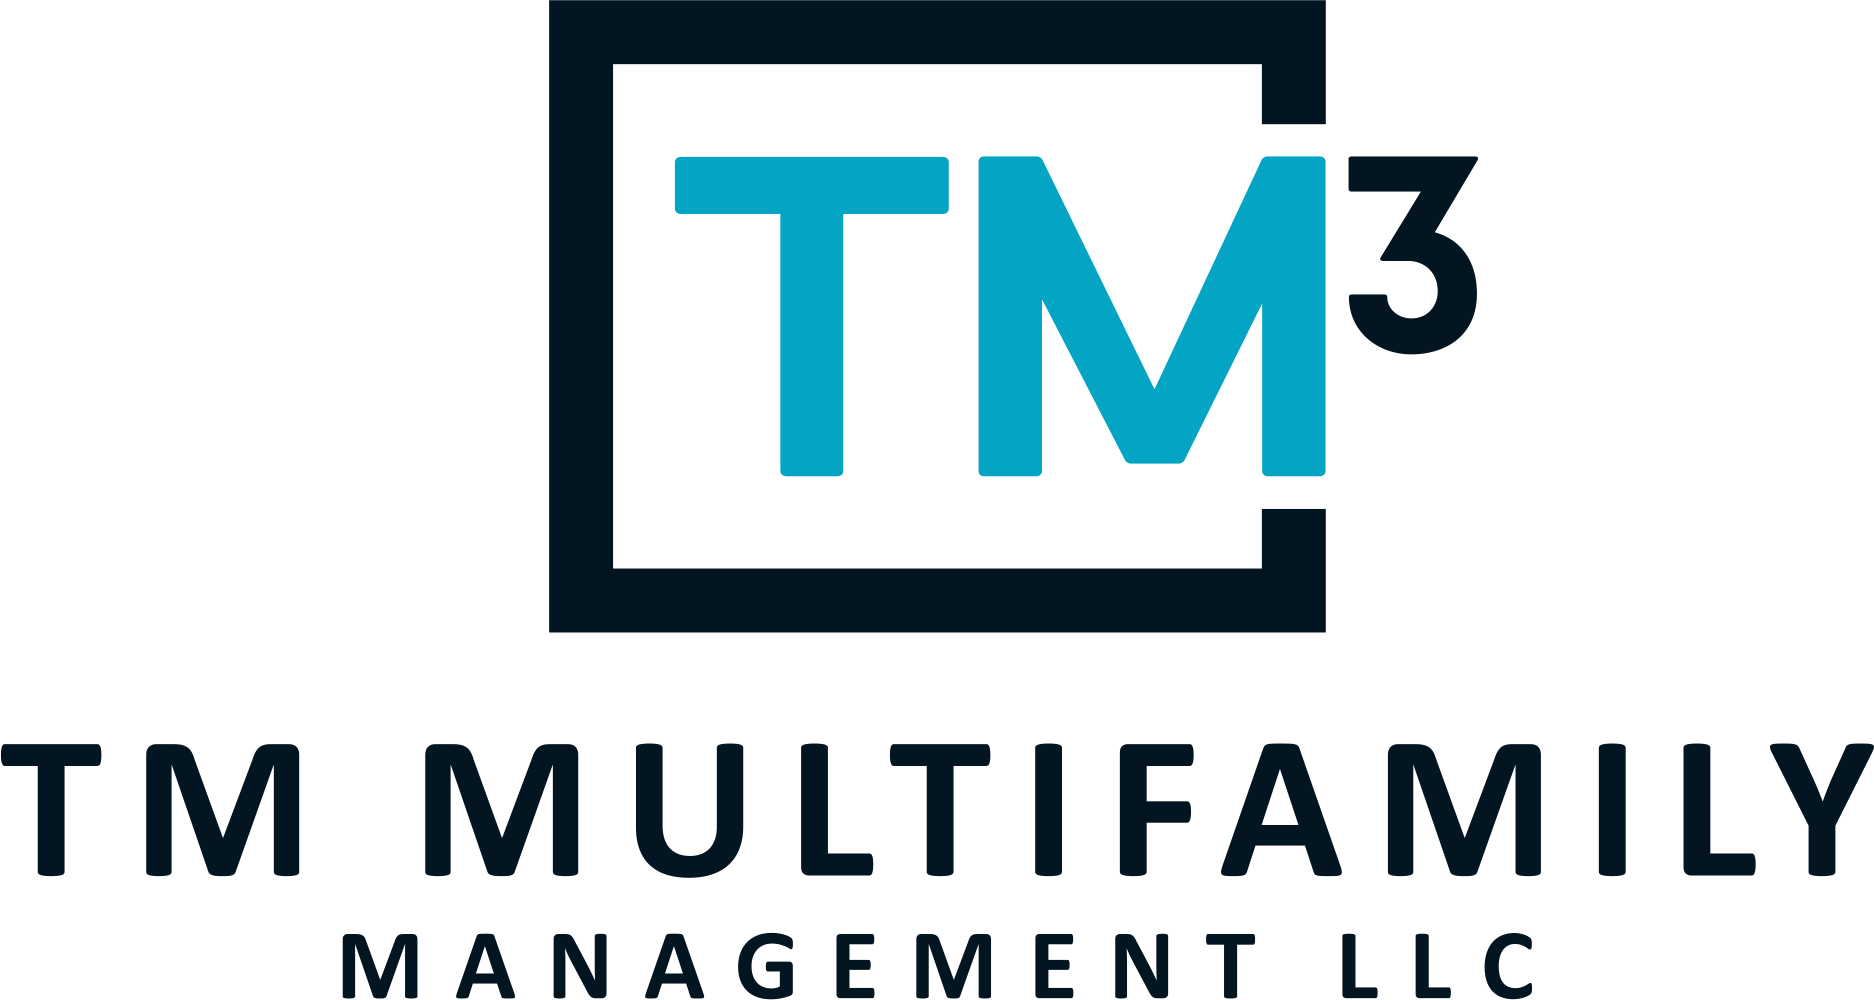 TM Multifamily Management LLC